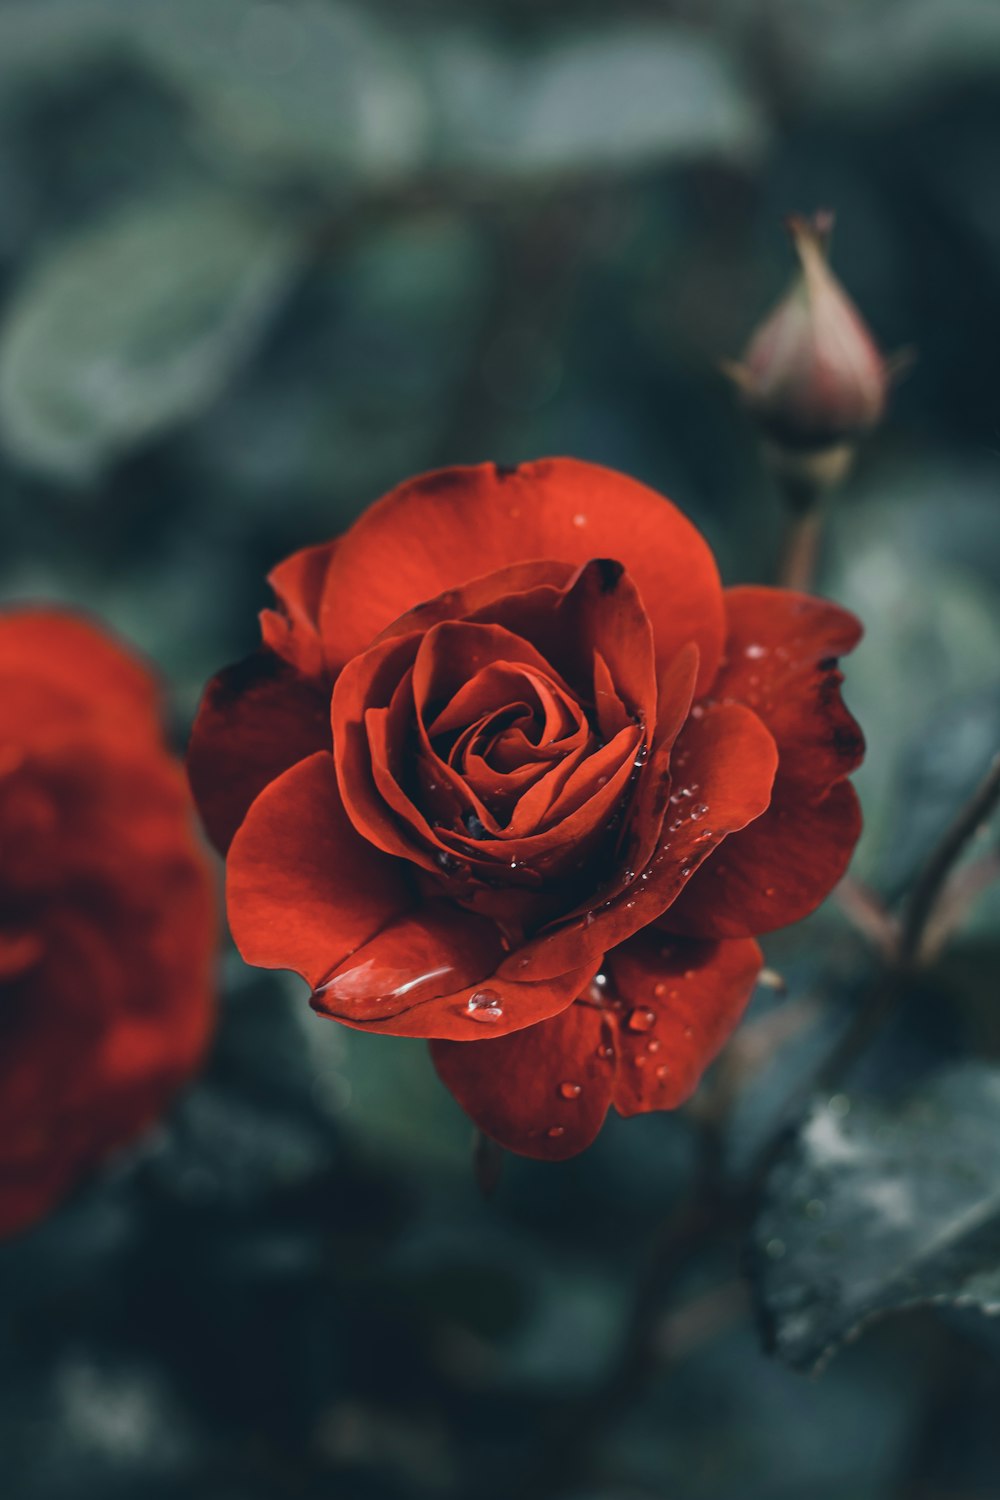 rosa vermelha em flor na fotografia de perto